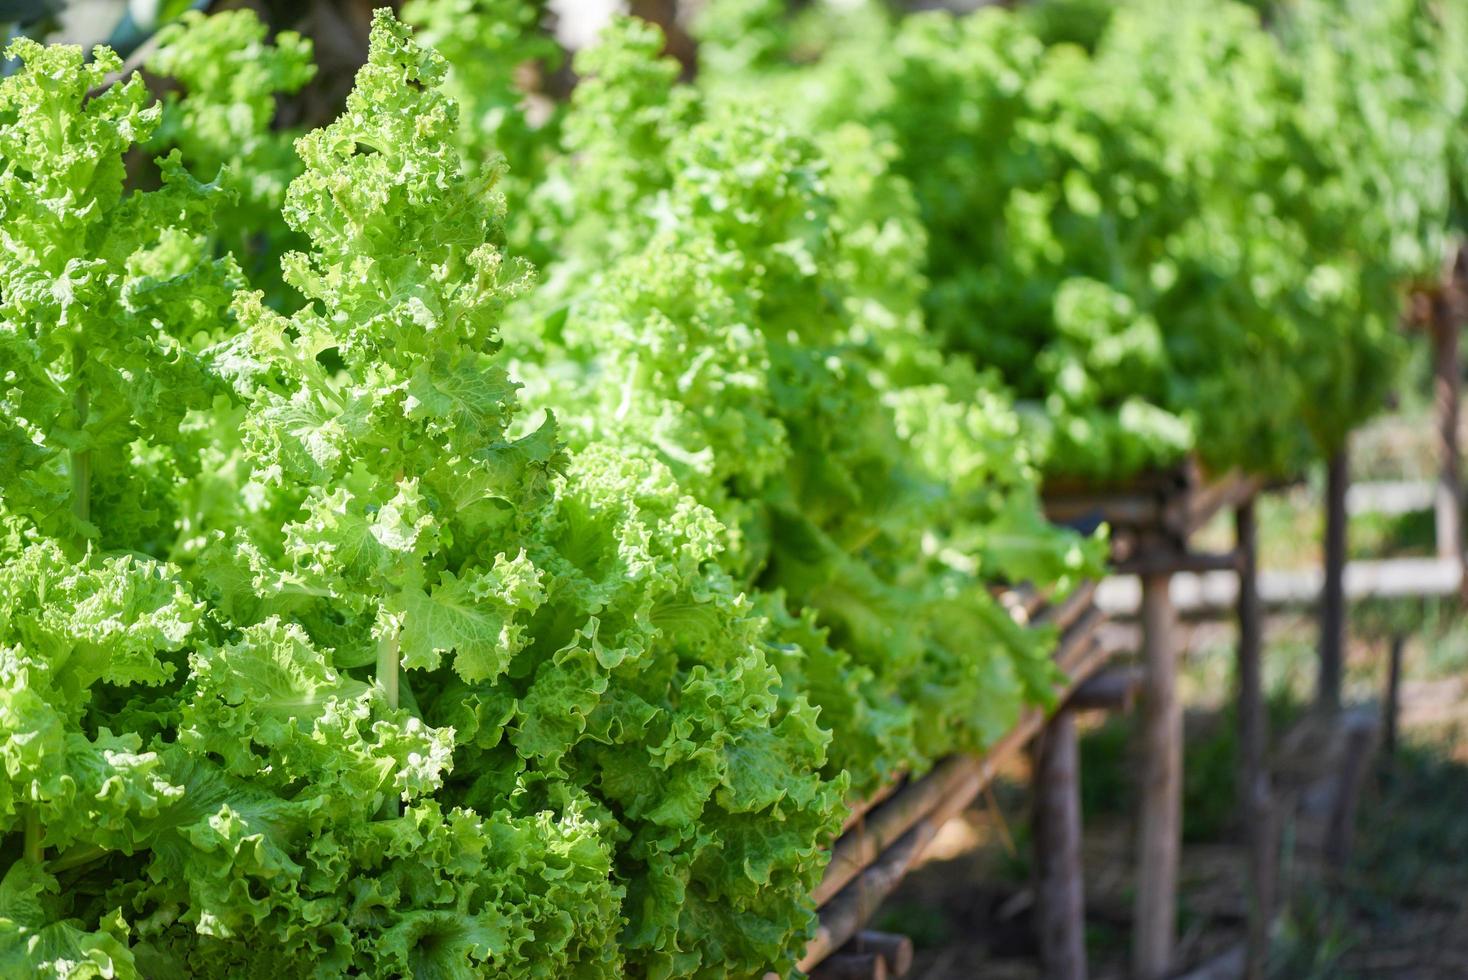 gros plan sur une salade de légumes verts dans le fond du jardin - fond de feuilles de laitue fraîche et luxuriante sur une ferme à base de plantes photo